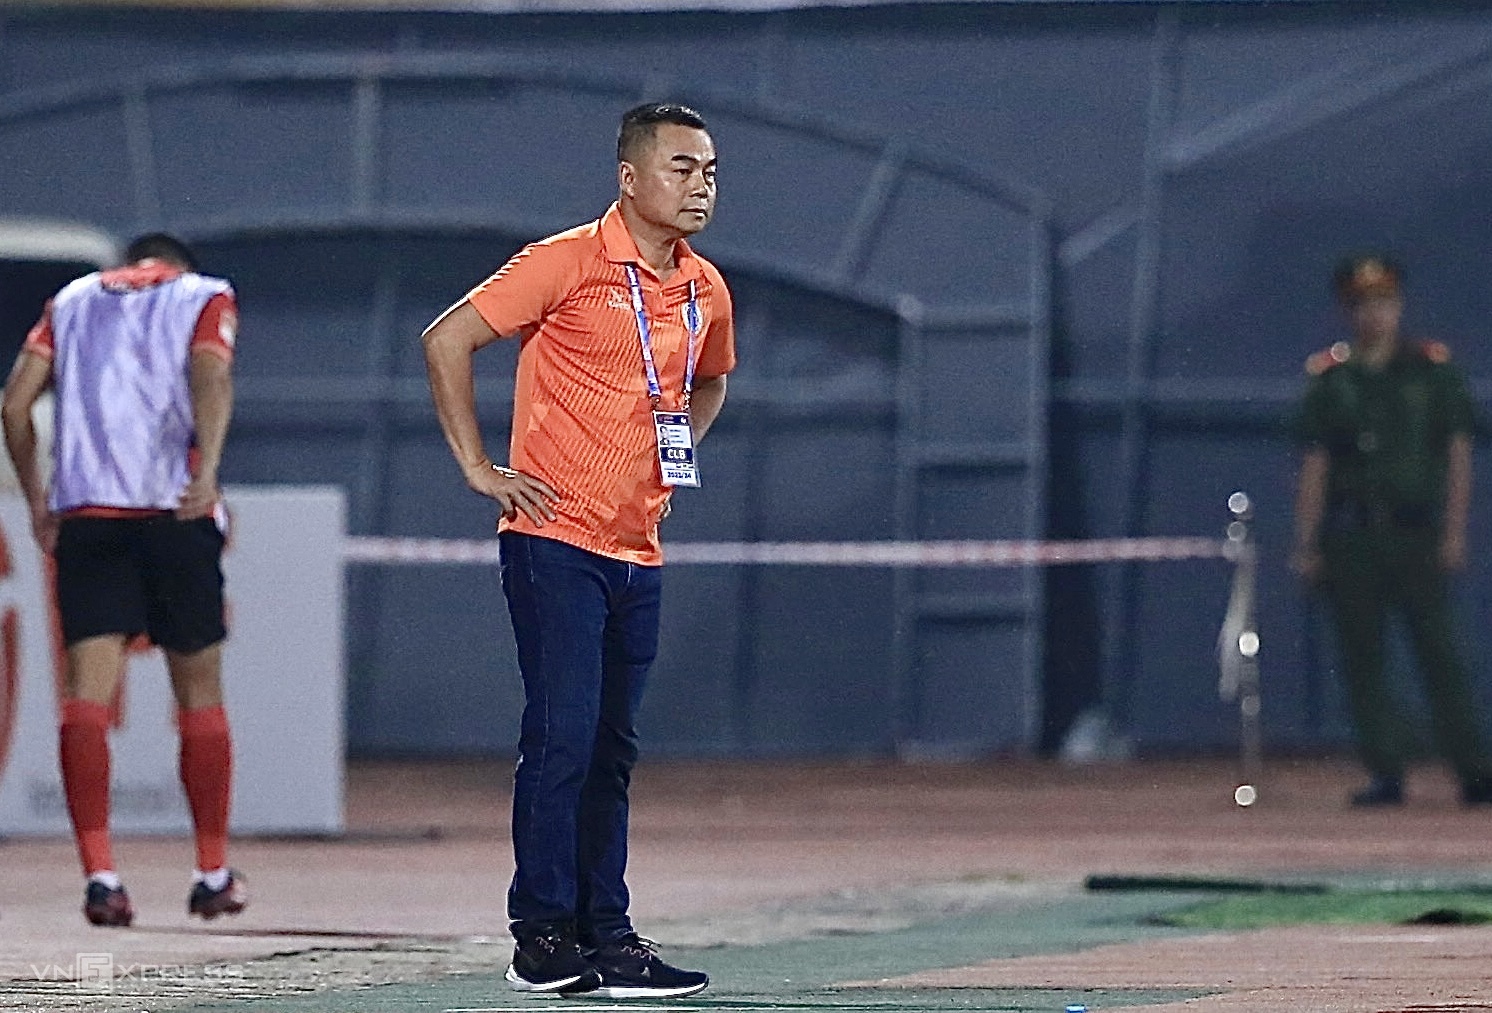 CLB TP. Hồ Chí Minh dẫn đầu V.League sau vòng 1; Barcelona thắng nhờ cầu thủ 17 tuổi Marc Guiu